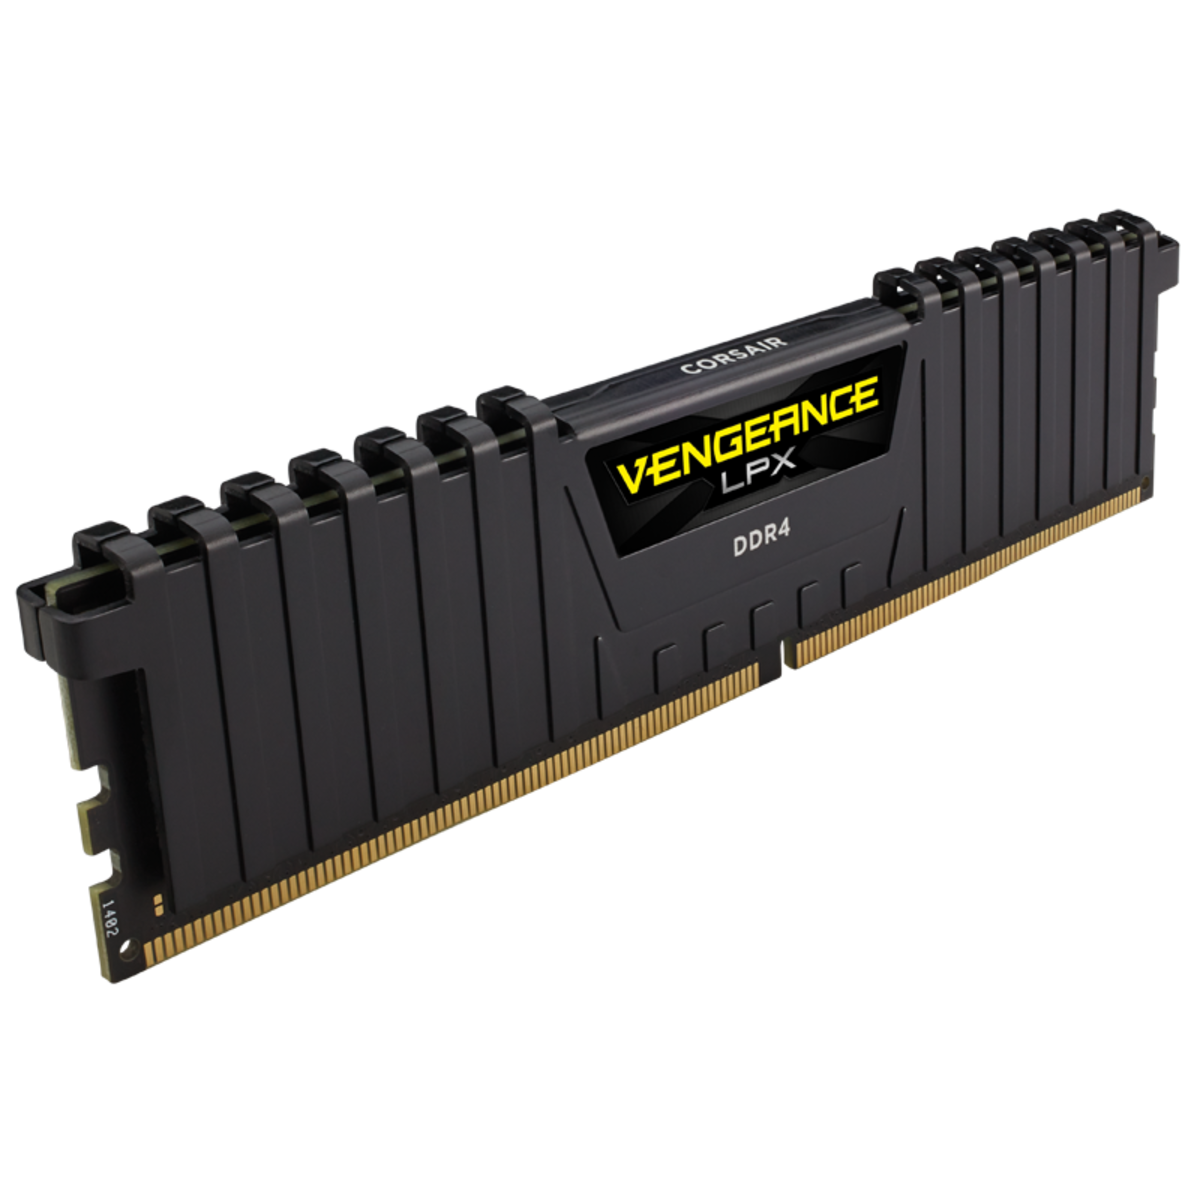 CORSAIR Vengeance LPX 16GB DDR4 3200MHz Desktop Memory Stick